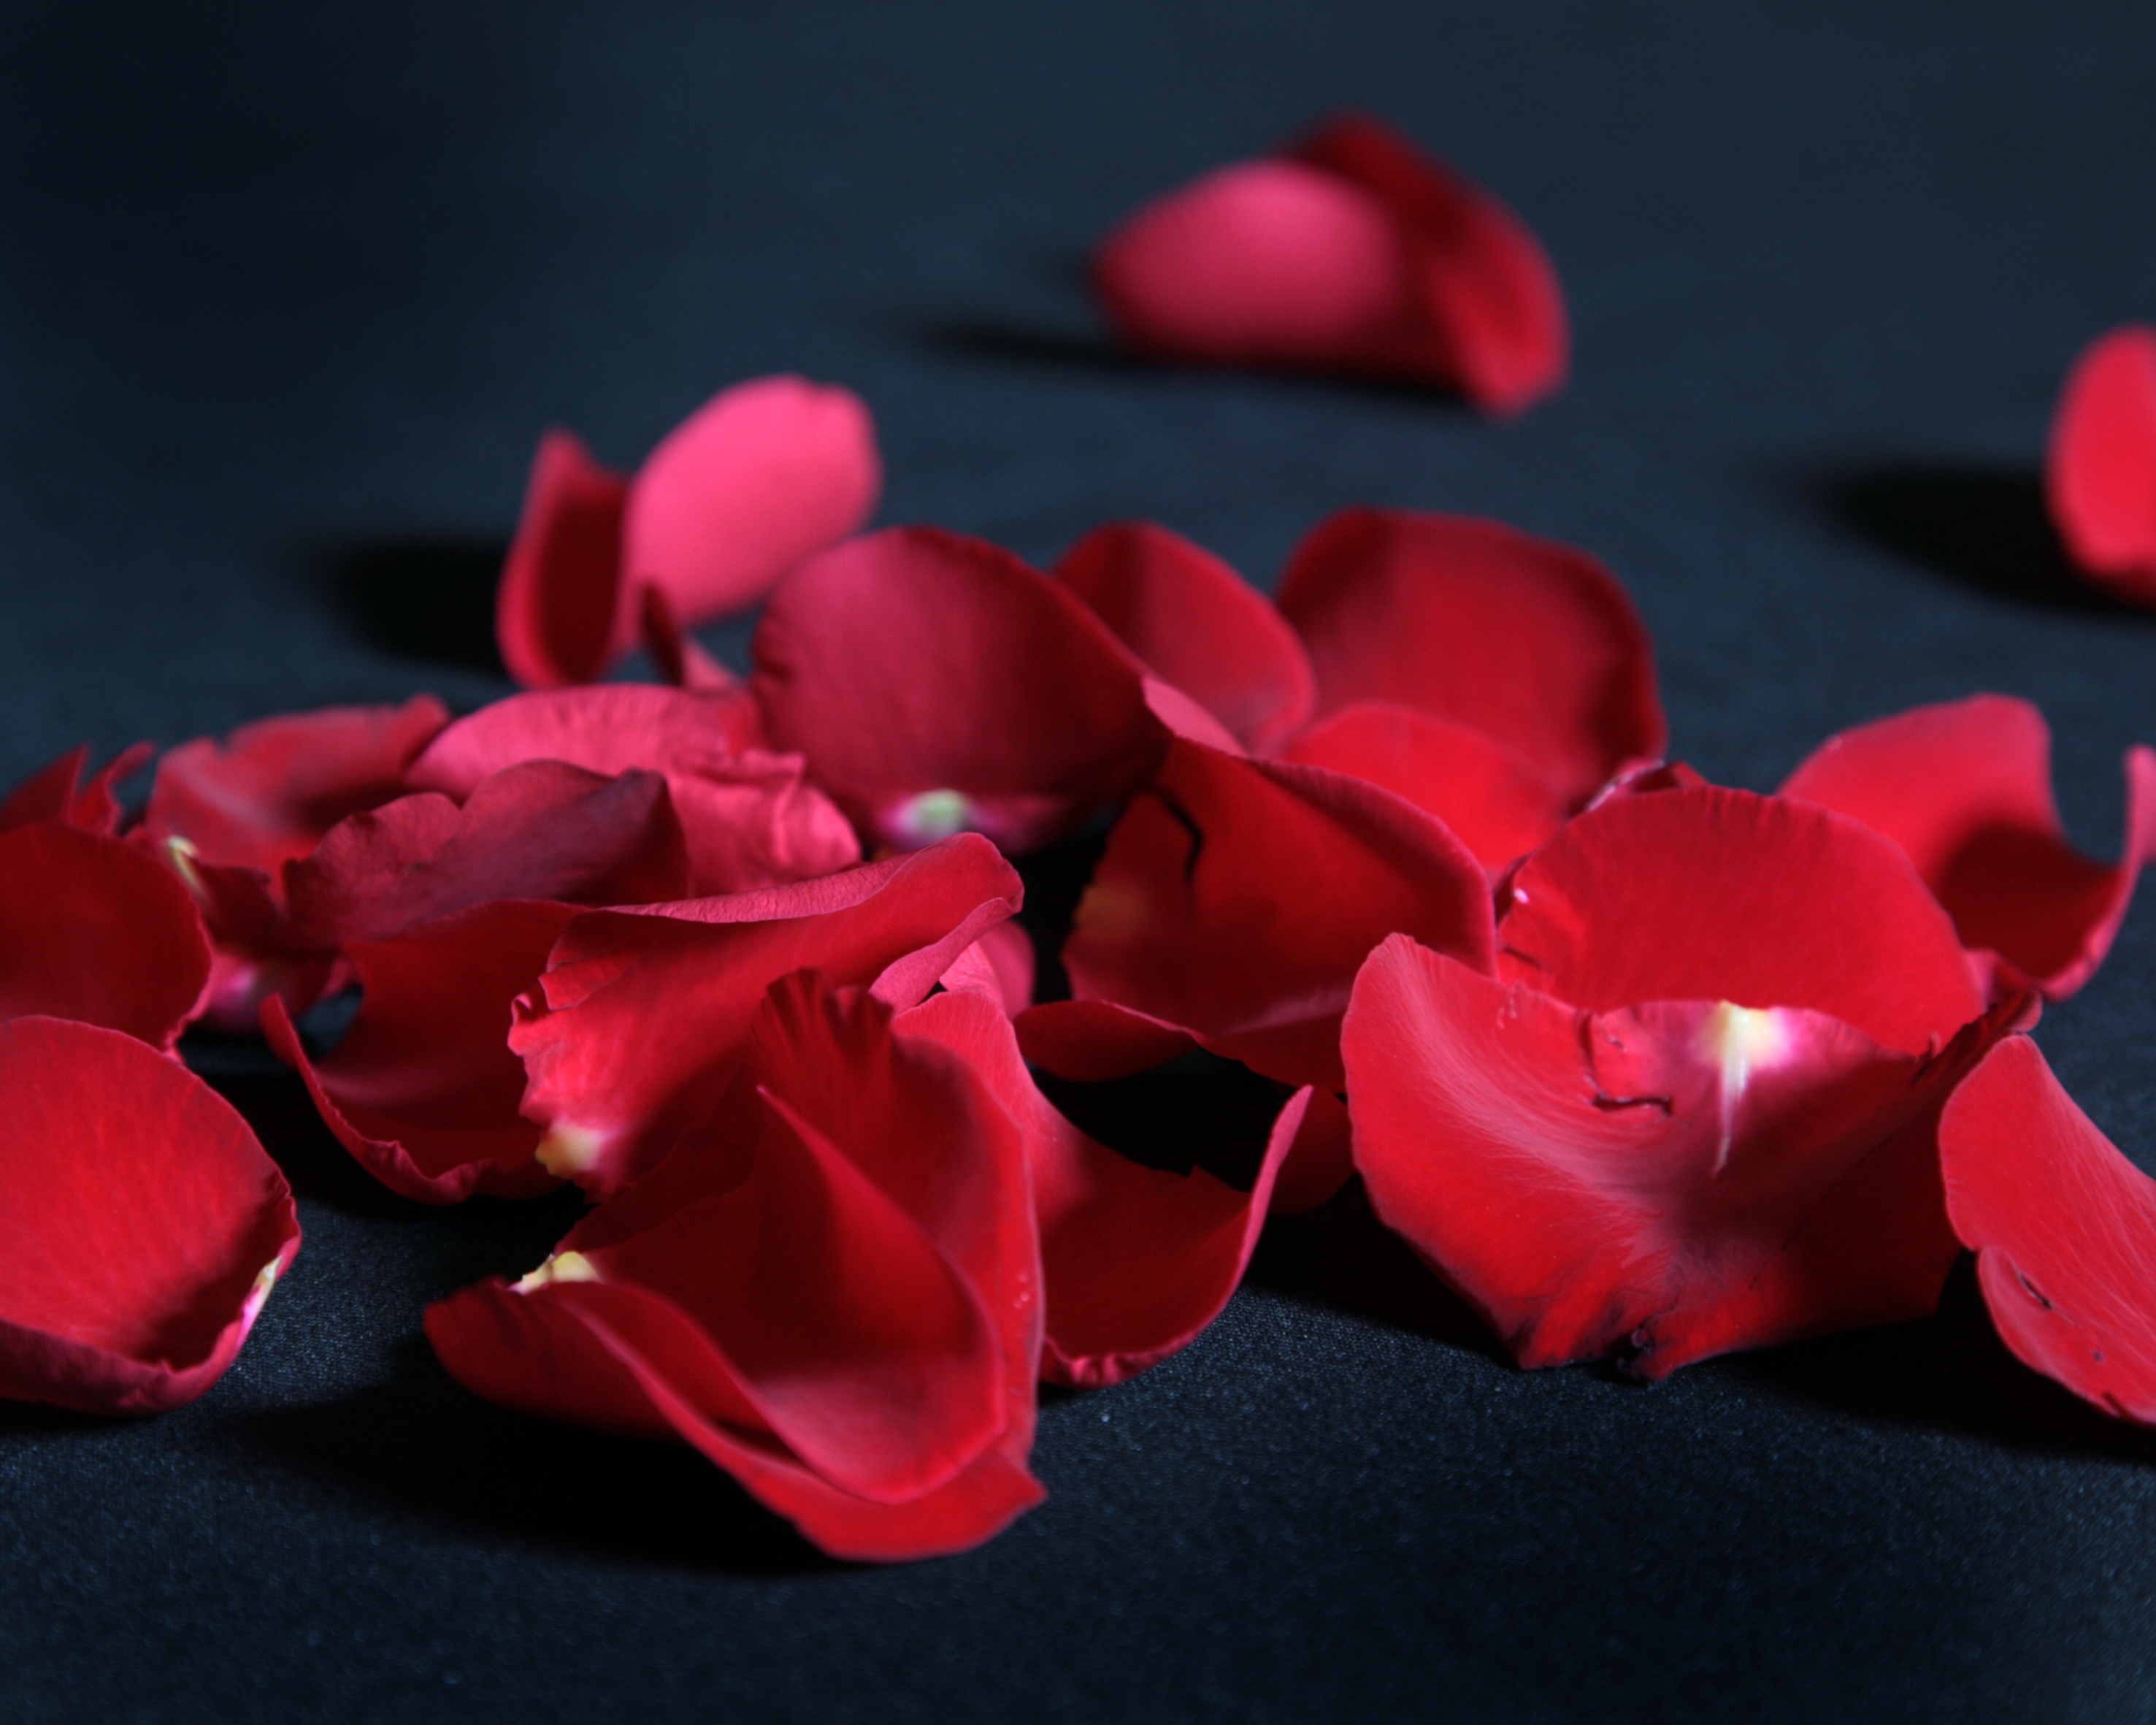 Röda rosenblad utspridda på ett svart tyg.